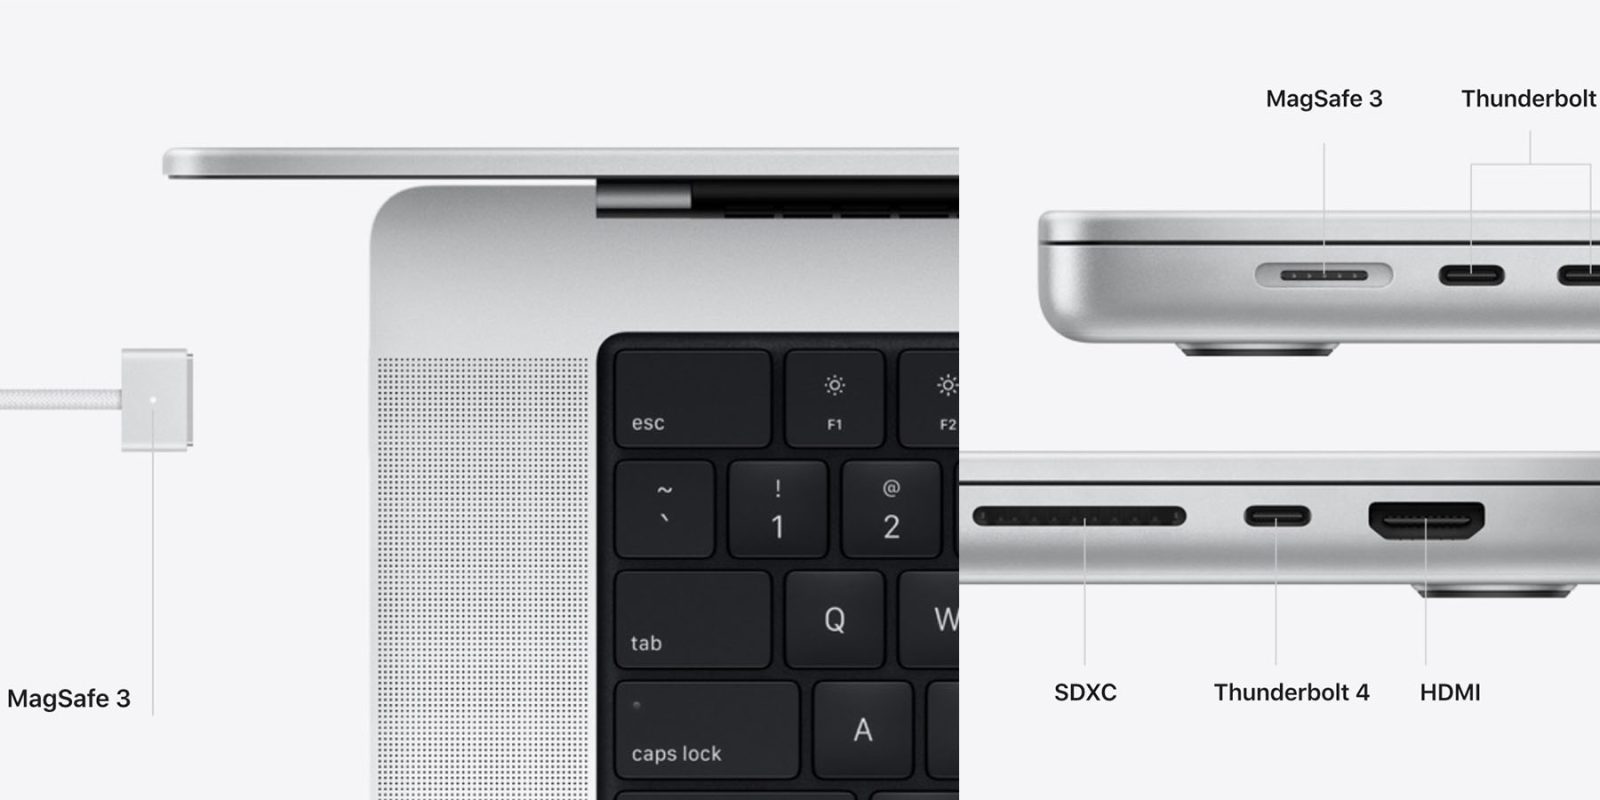 Eik schapen verwijzen 16-inch MacBook Pro charger requires MagSafe for full power - 9to5Mac